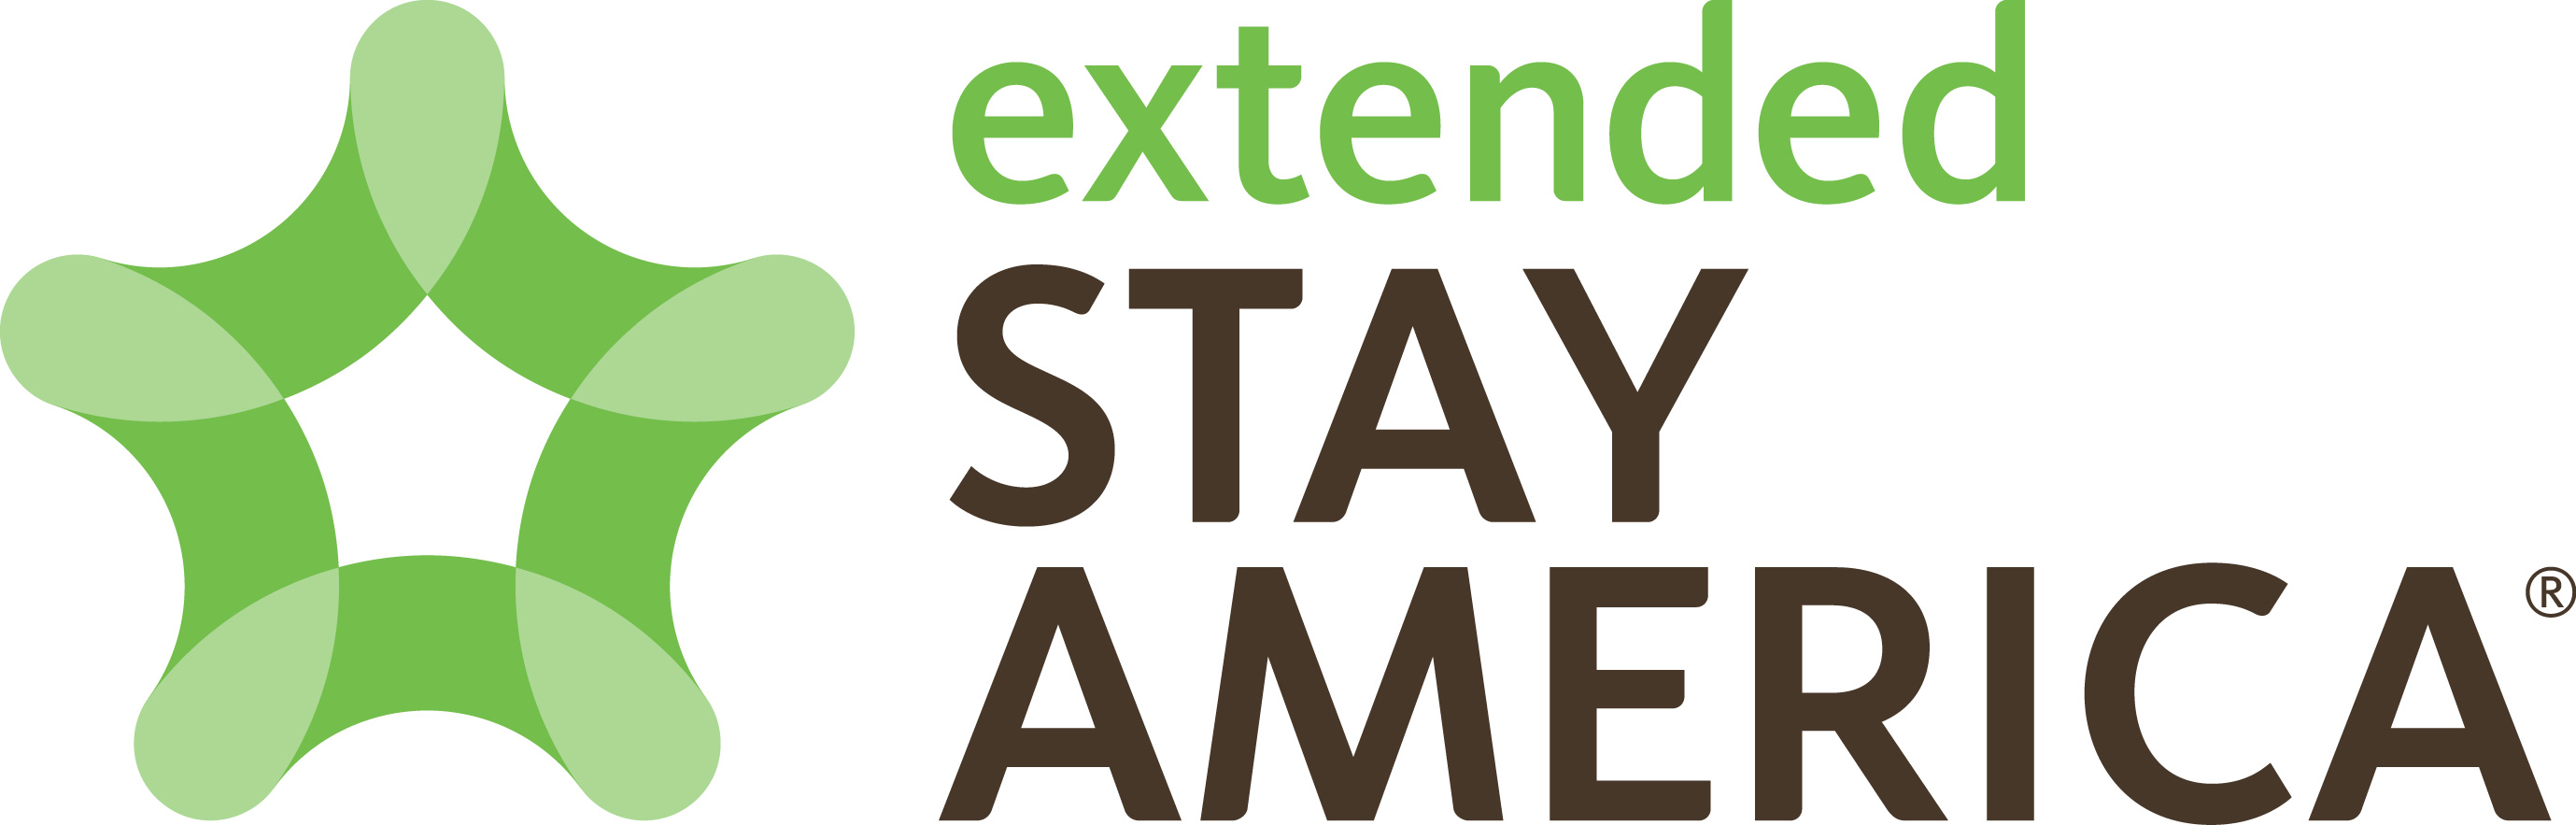 Ектендед Стаи Америца најављује раст од 20% у свом портфељу франшиза